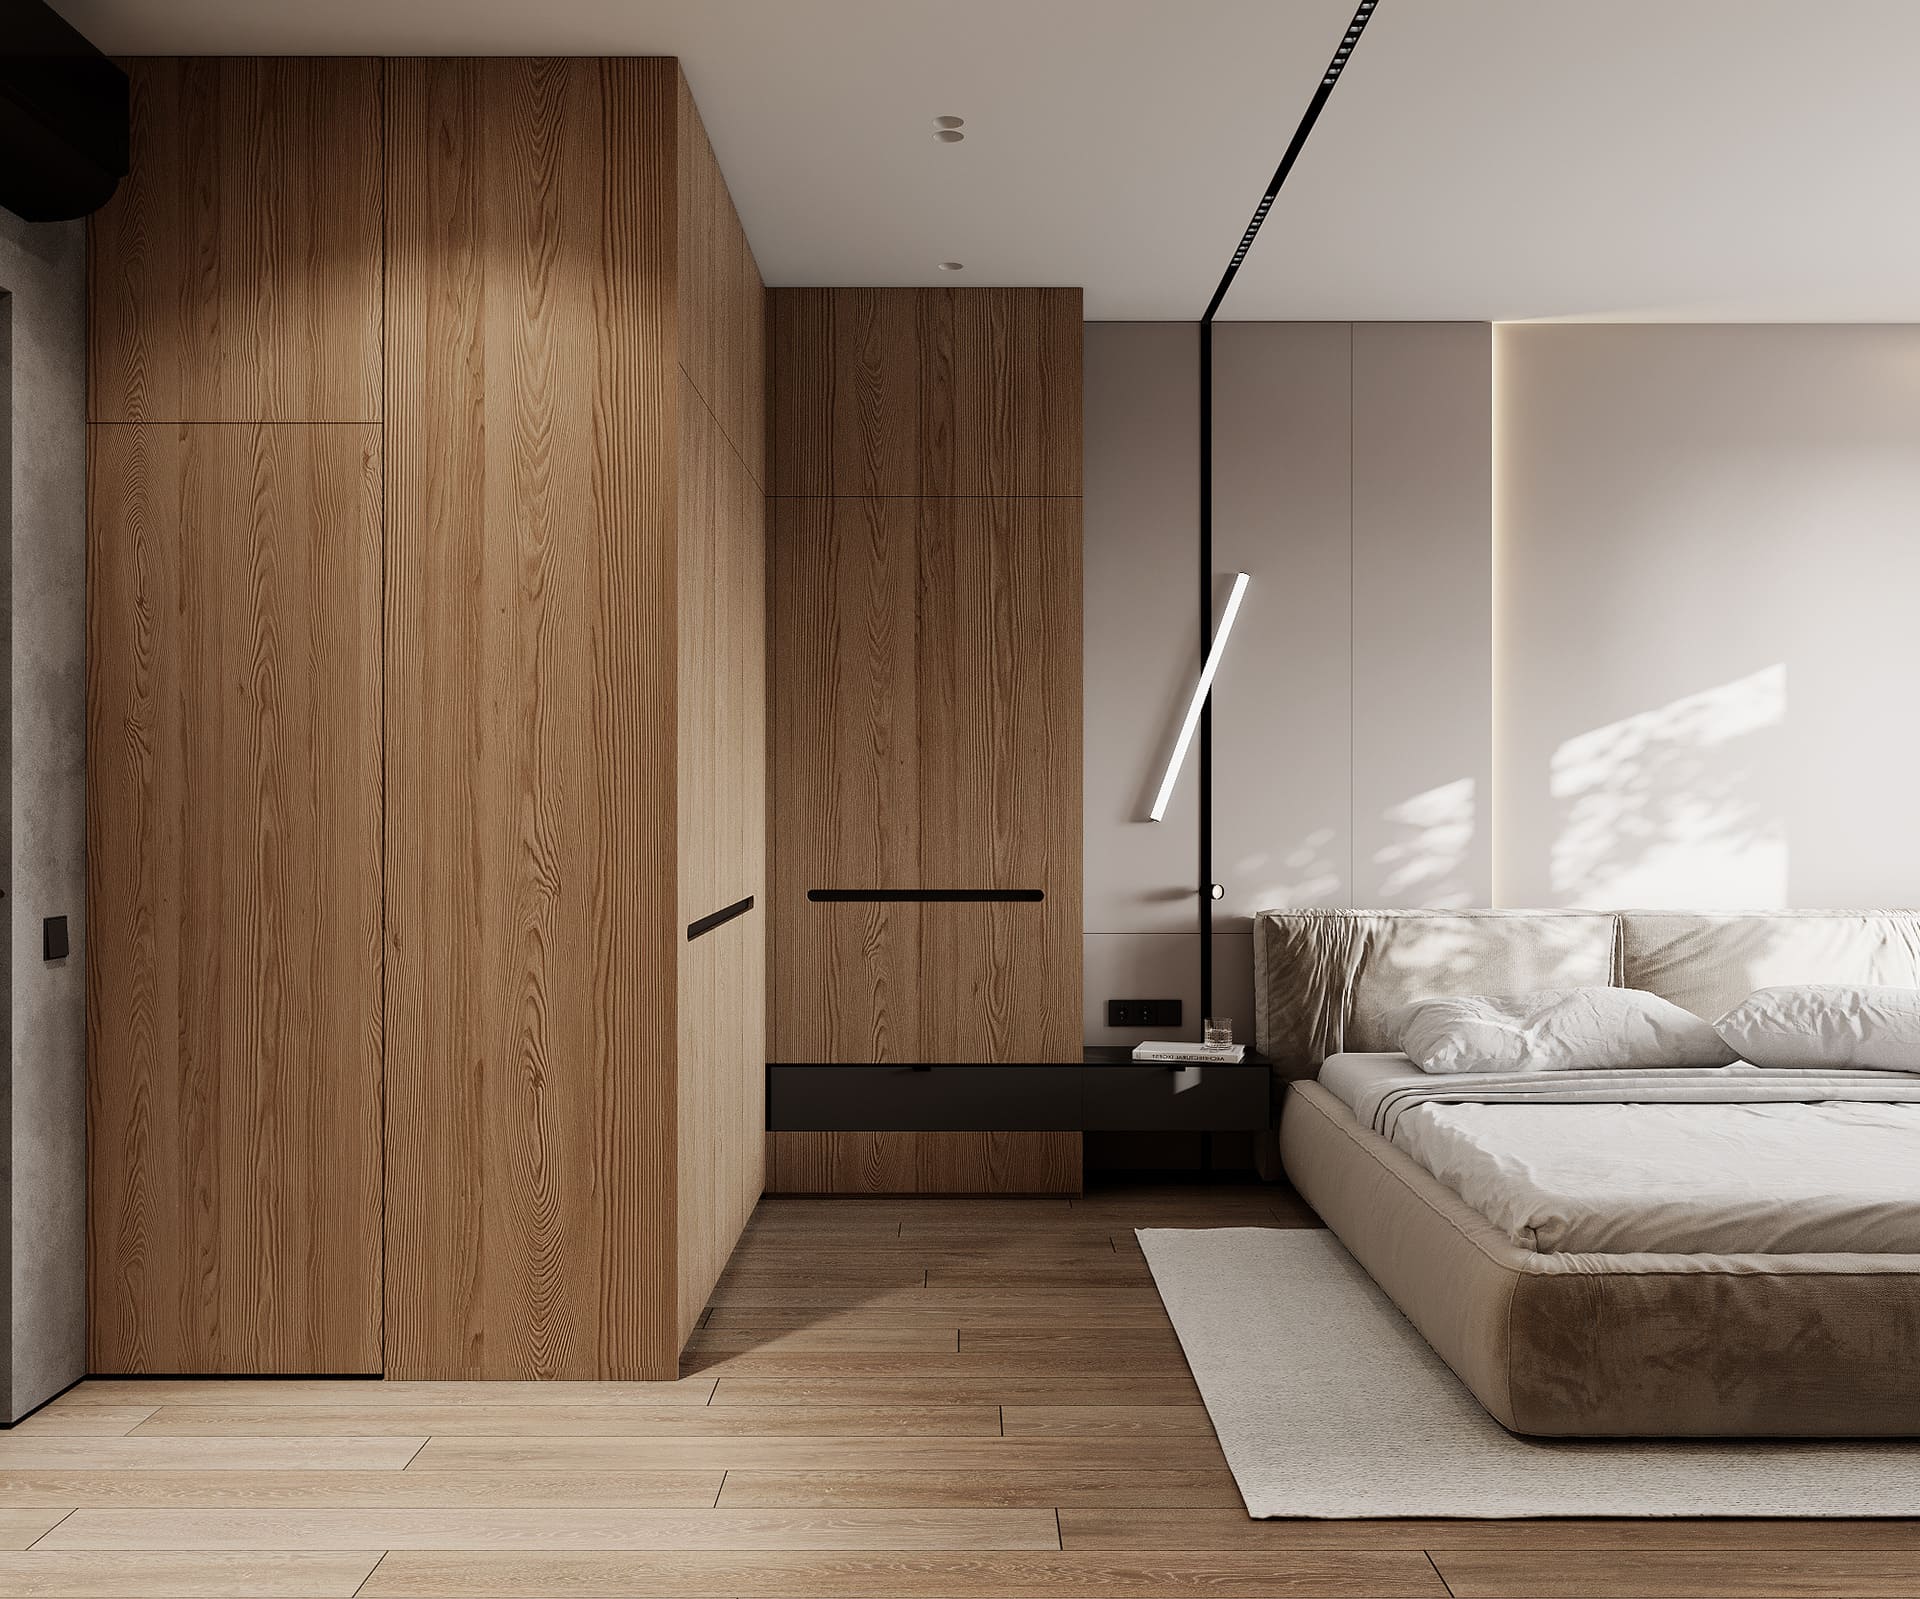 Лаконічна квартира у стилі мінімалізм, спальня, фото 21